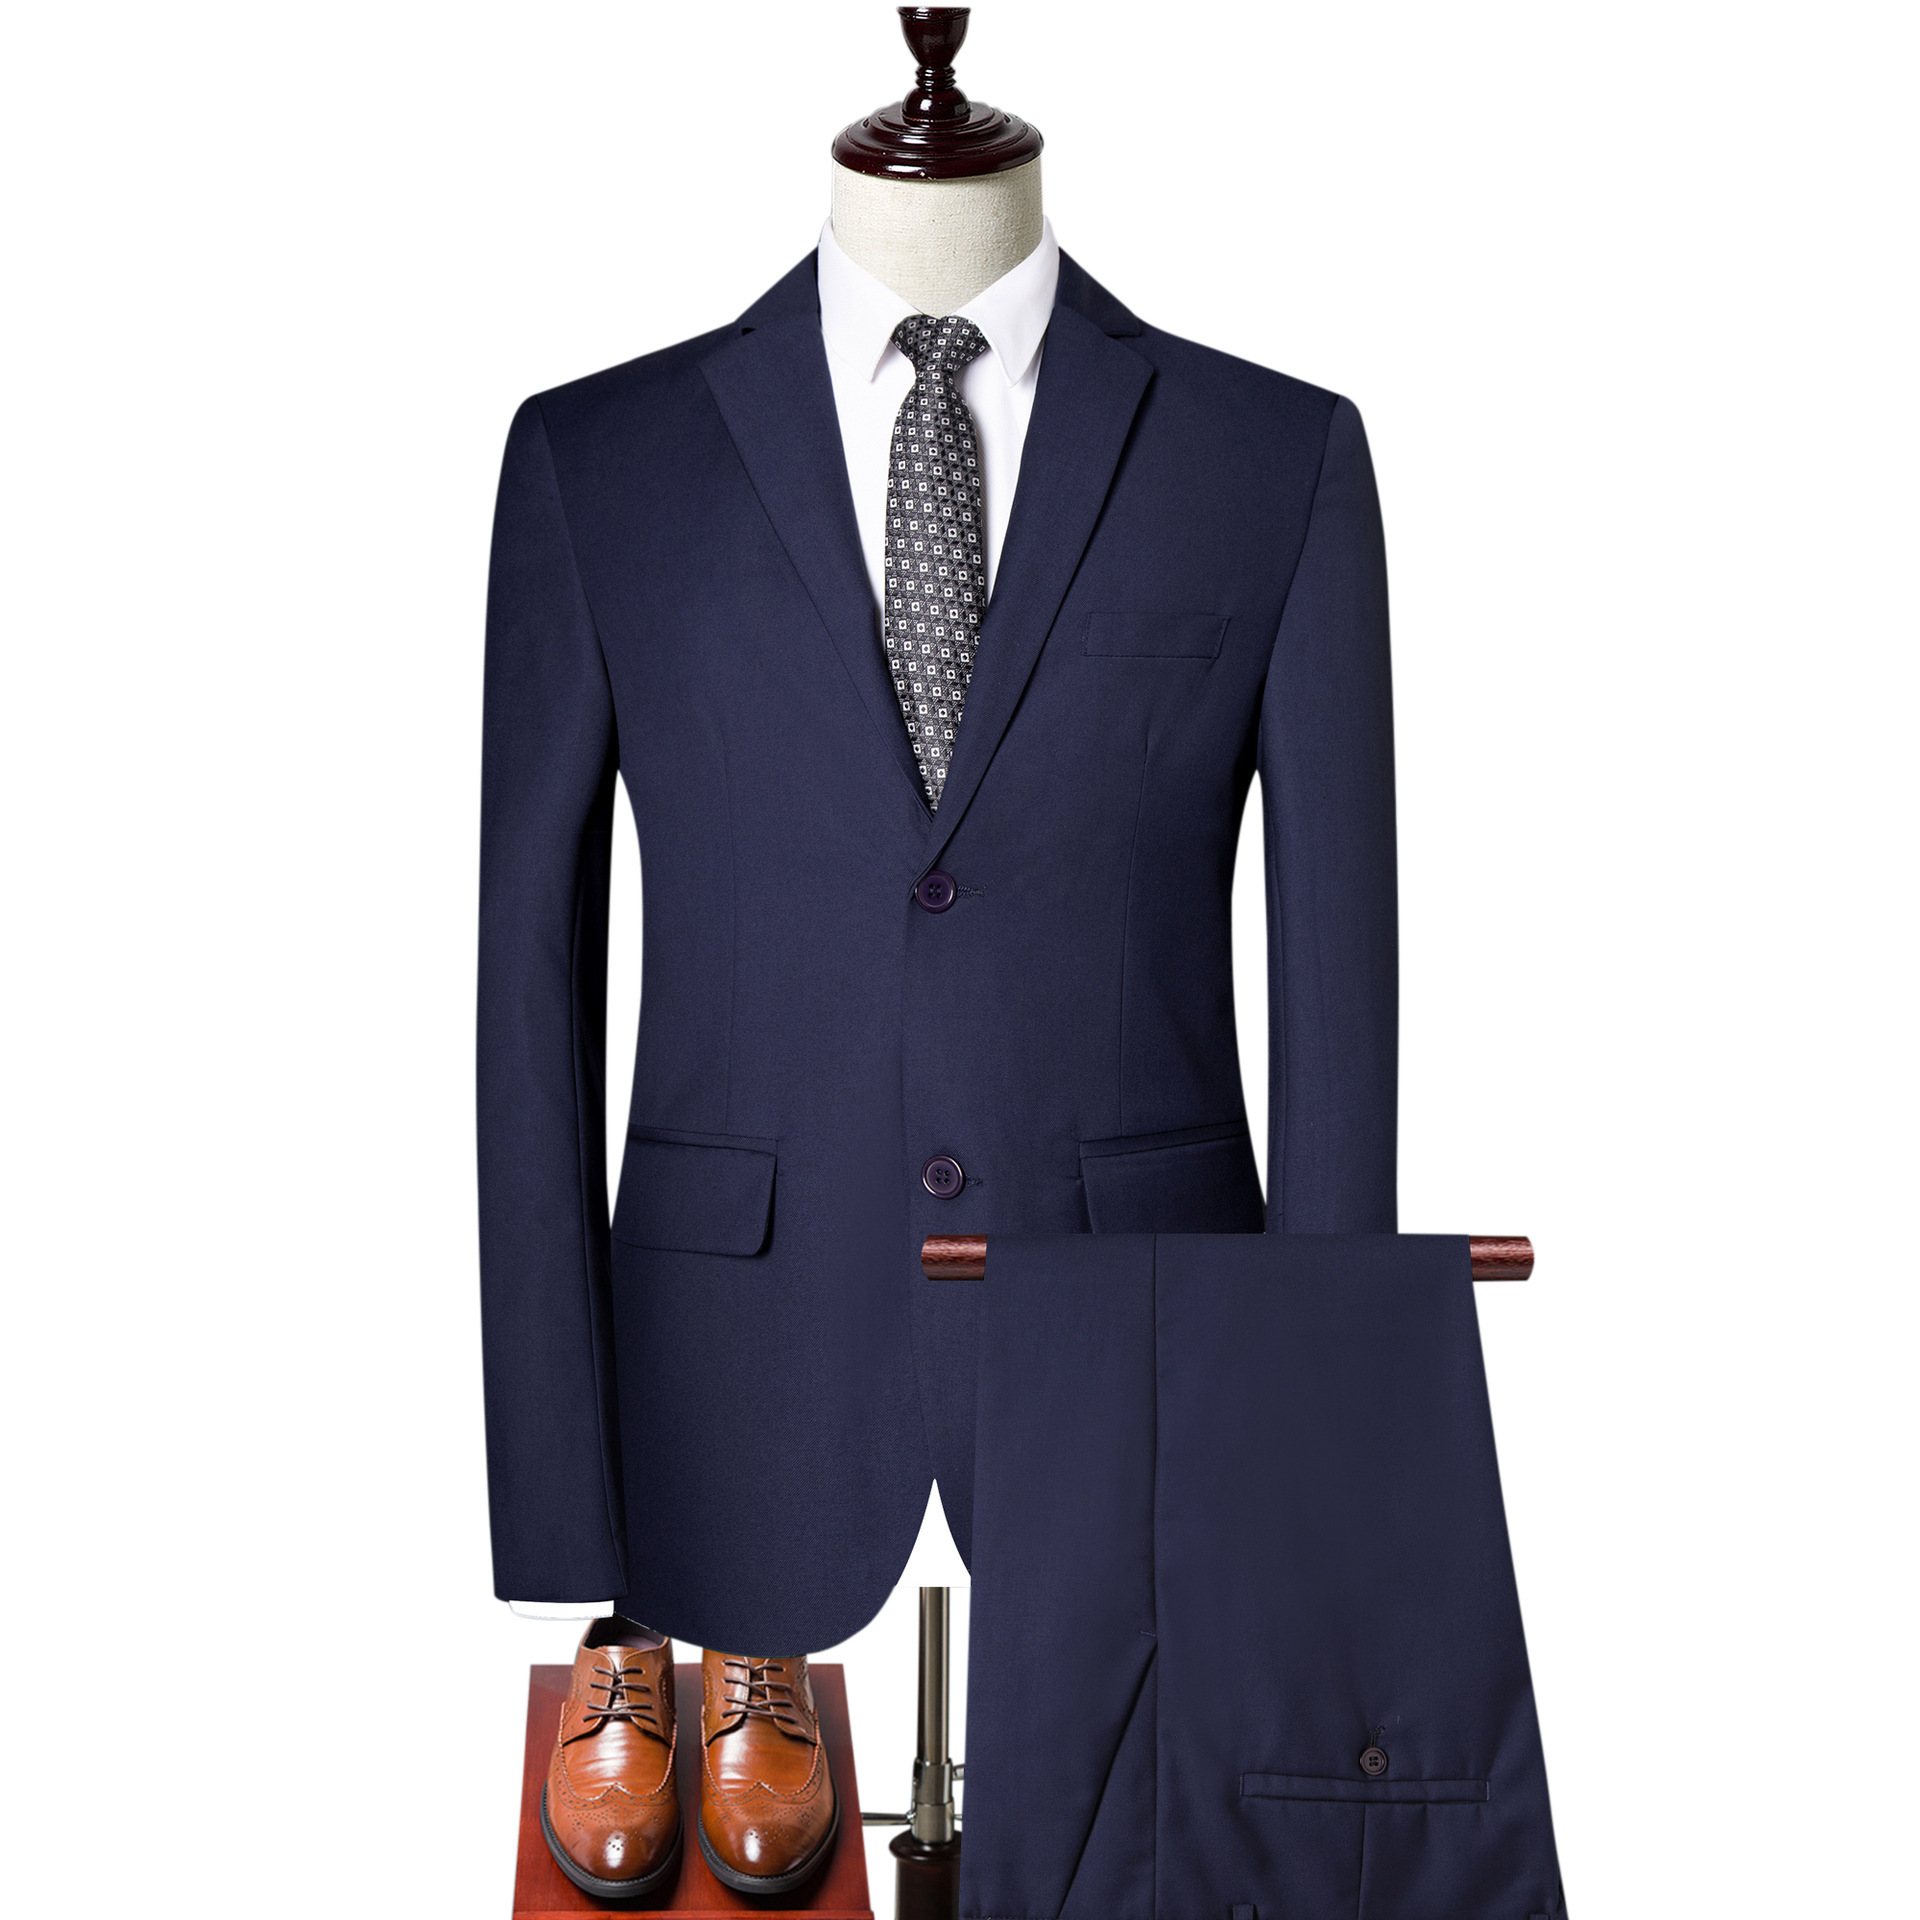 Fall 2019 new men's slim suit suit suit three piece dress men's casual large solid color suit